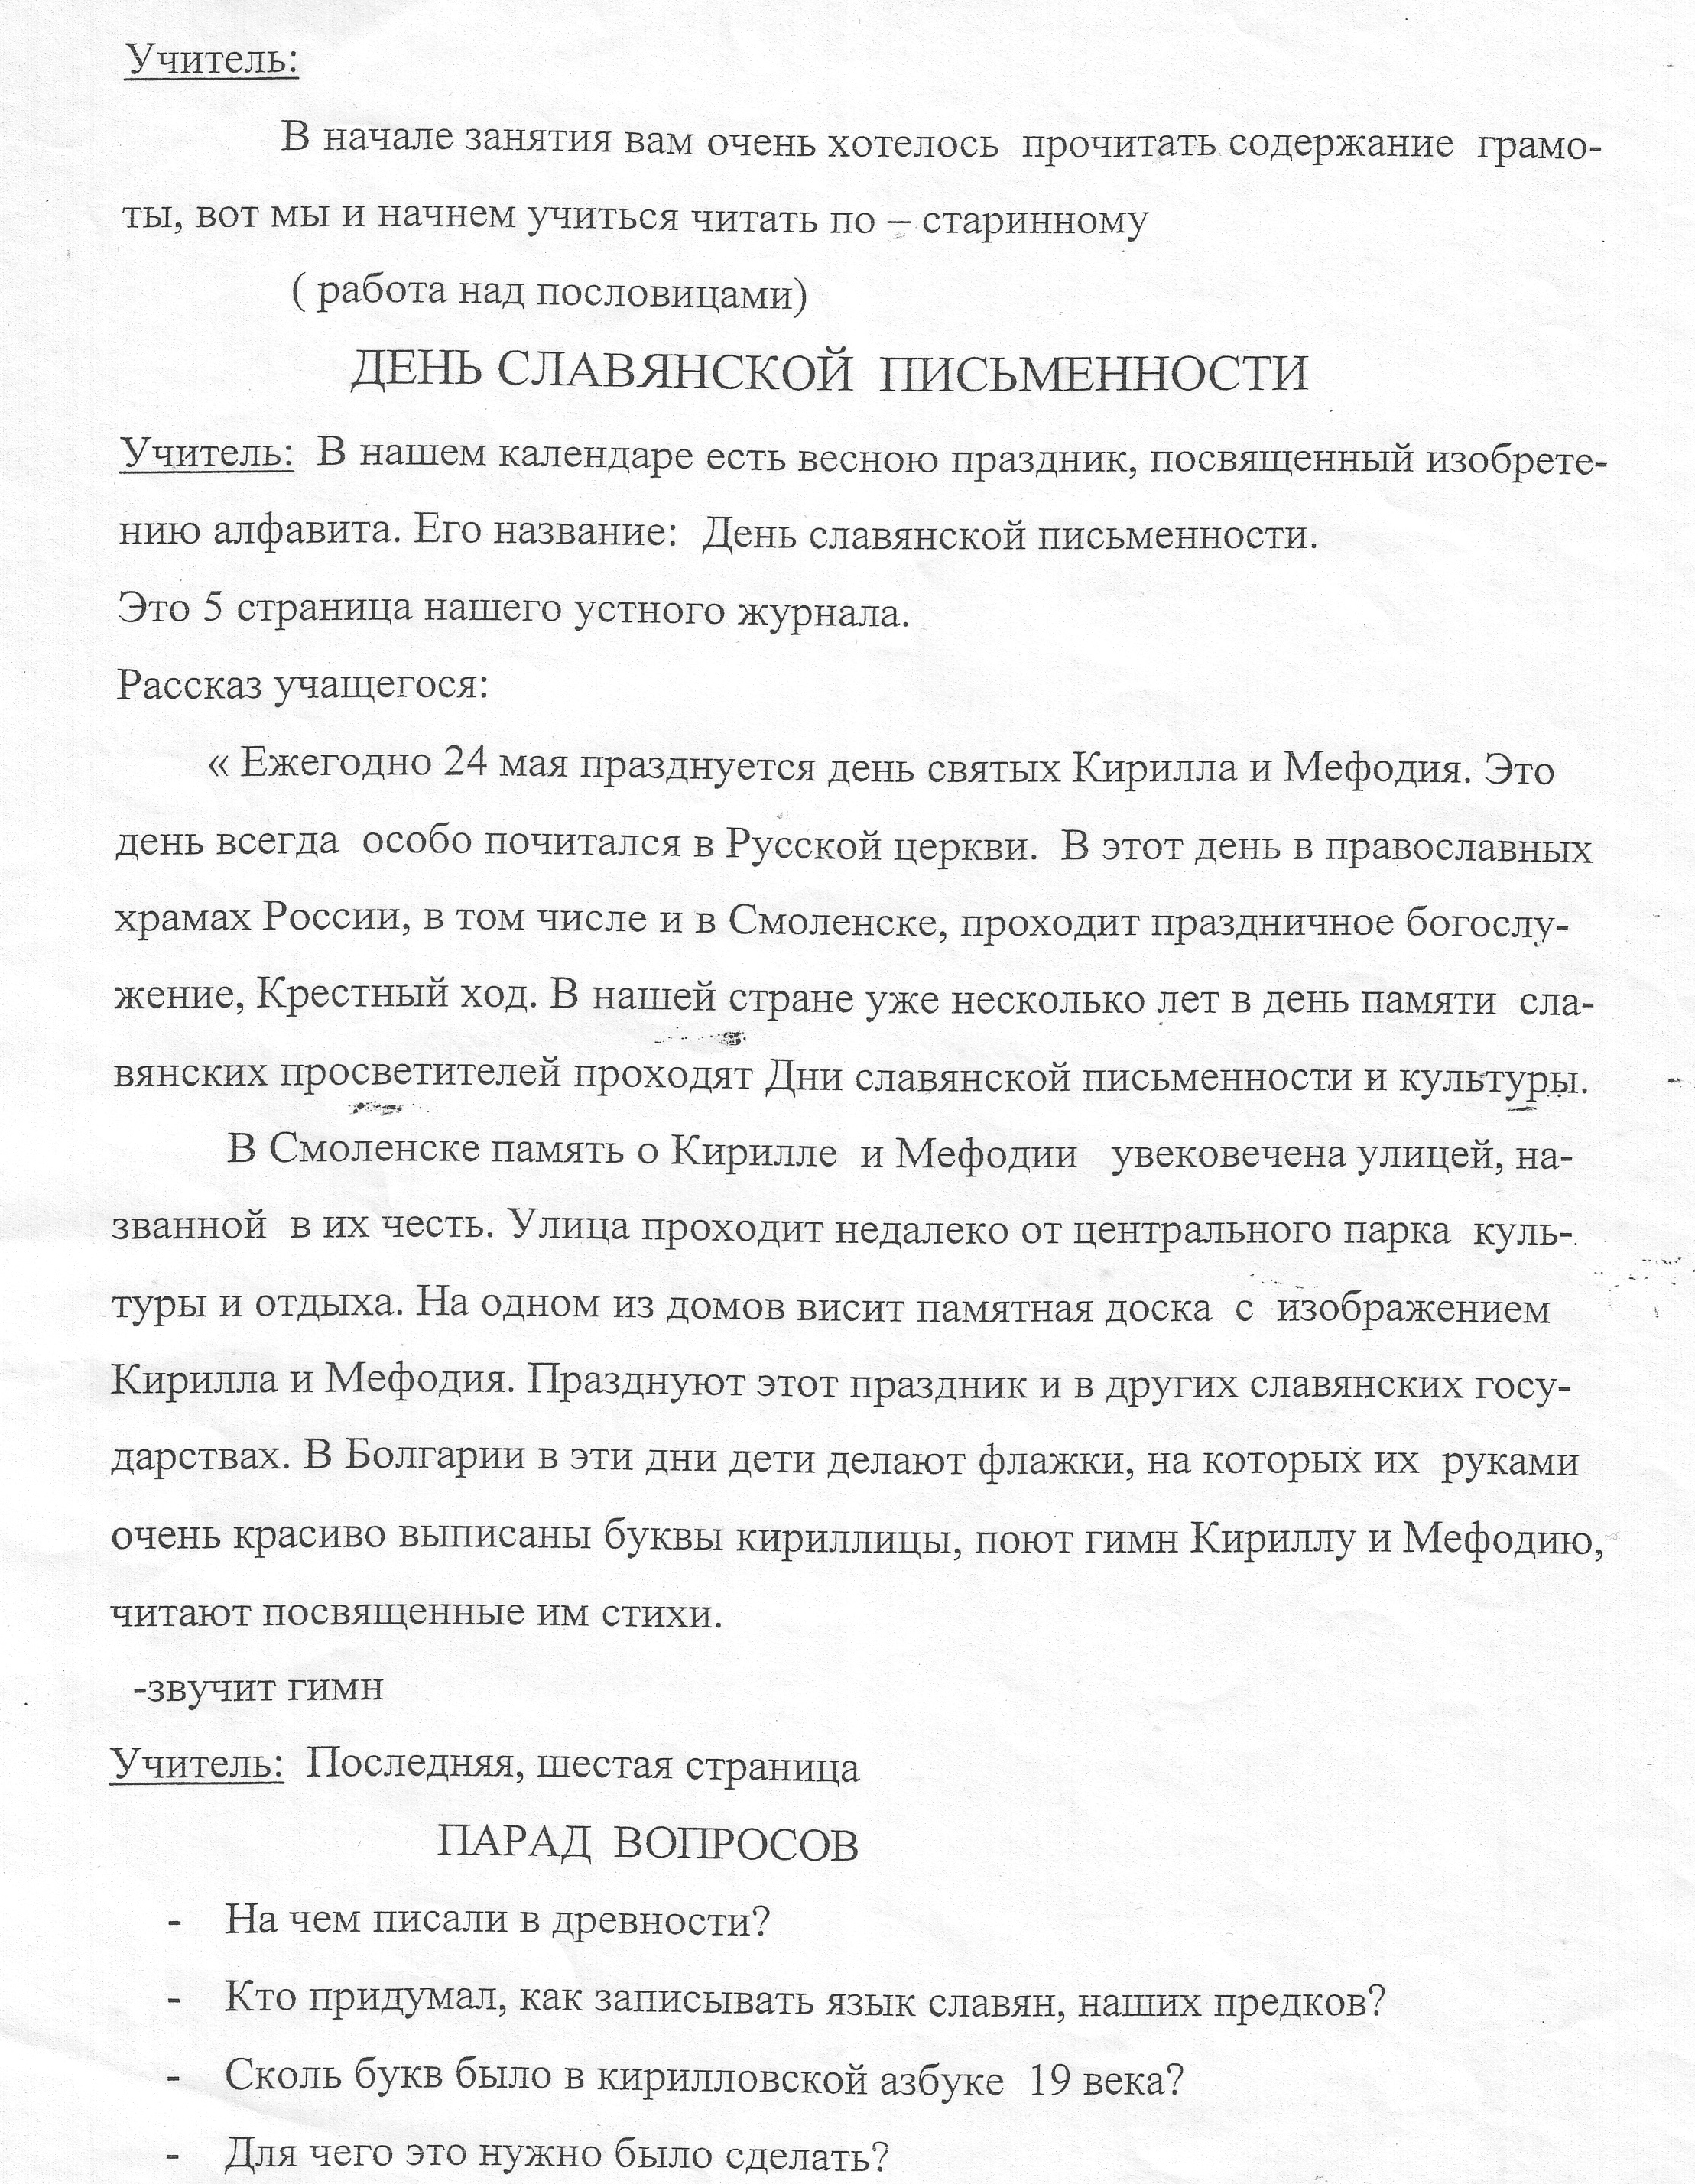 Конспект внеклассного мероприятия «Праздник славянской письменности и культуры»